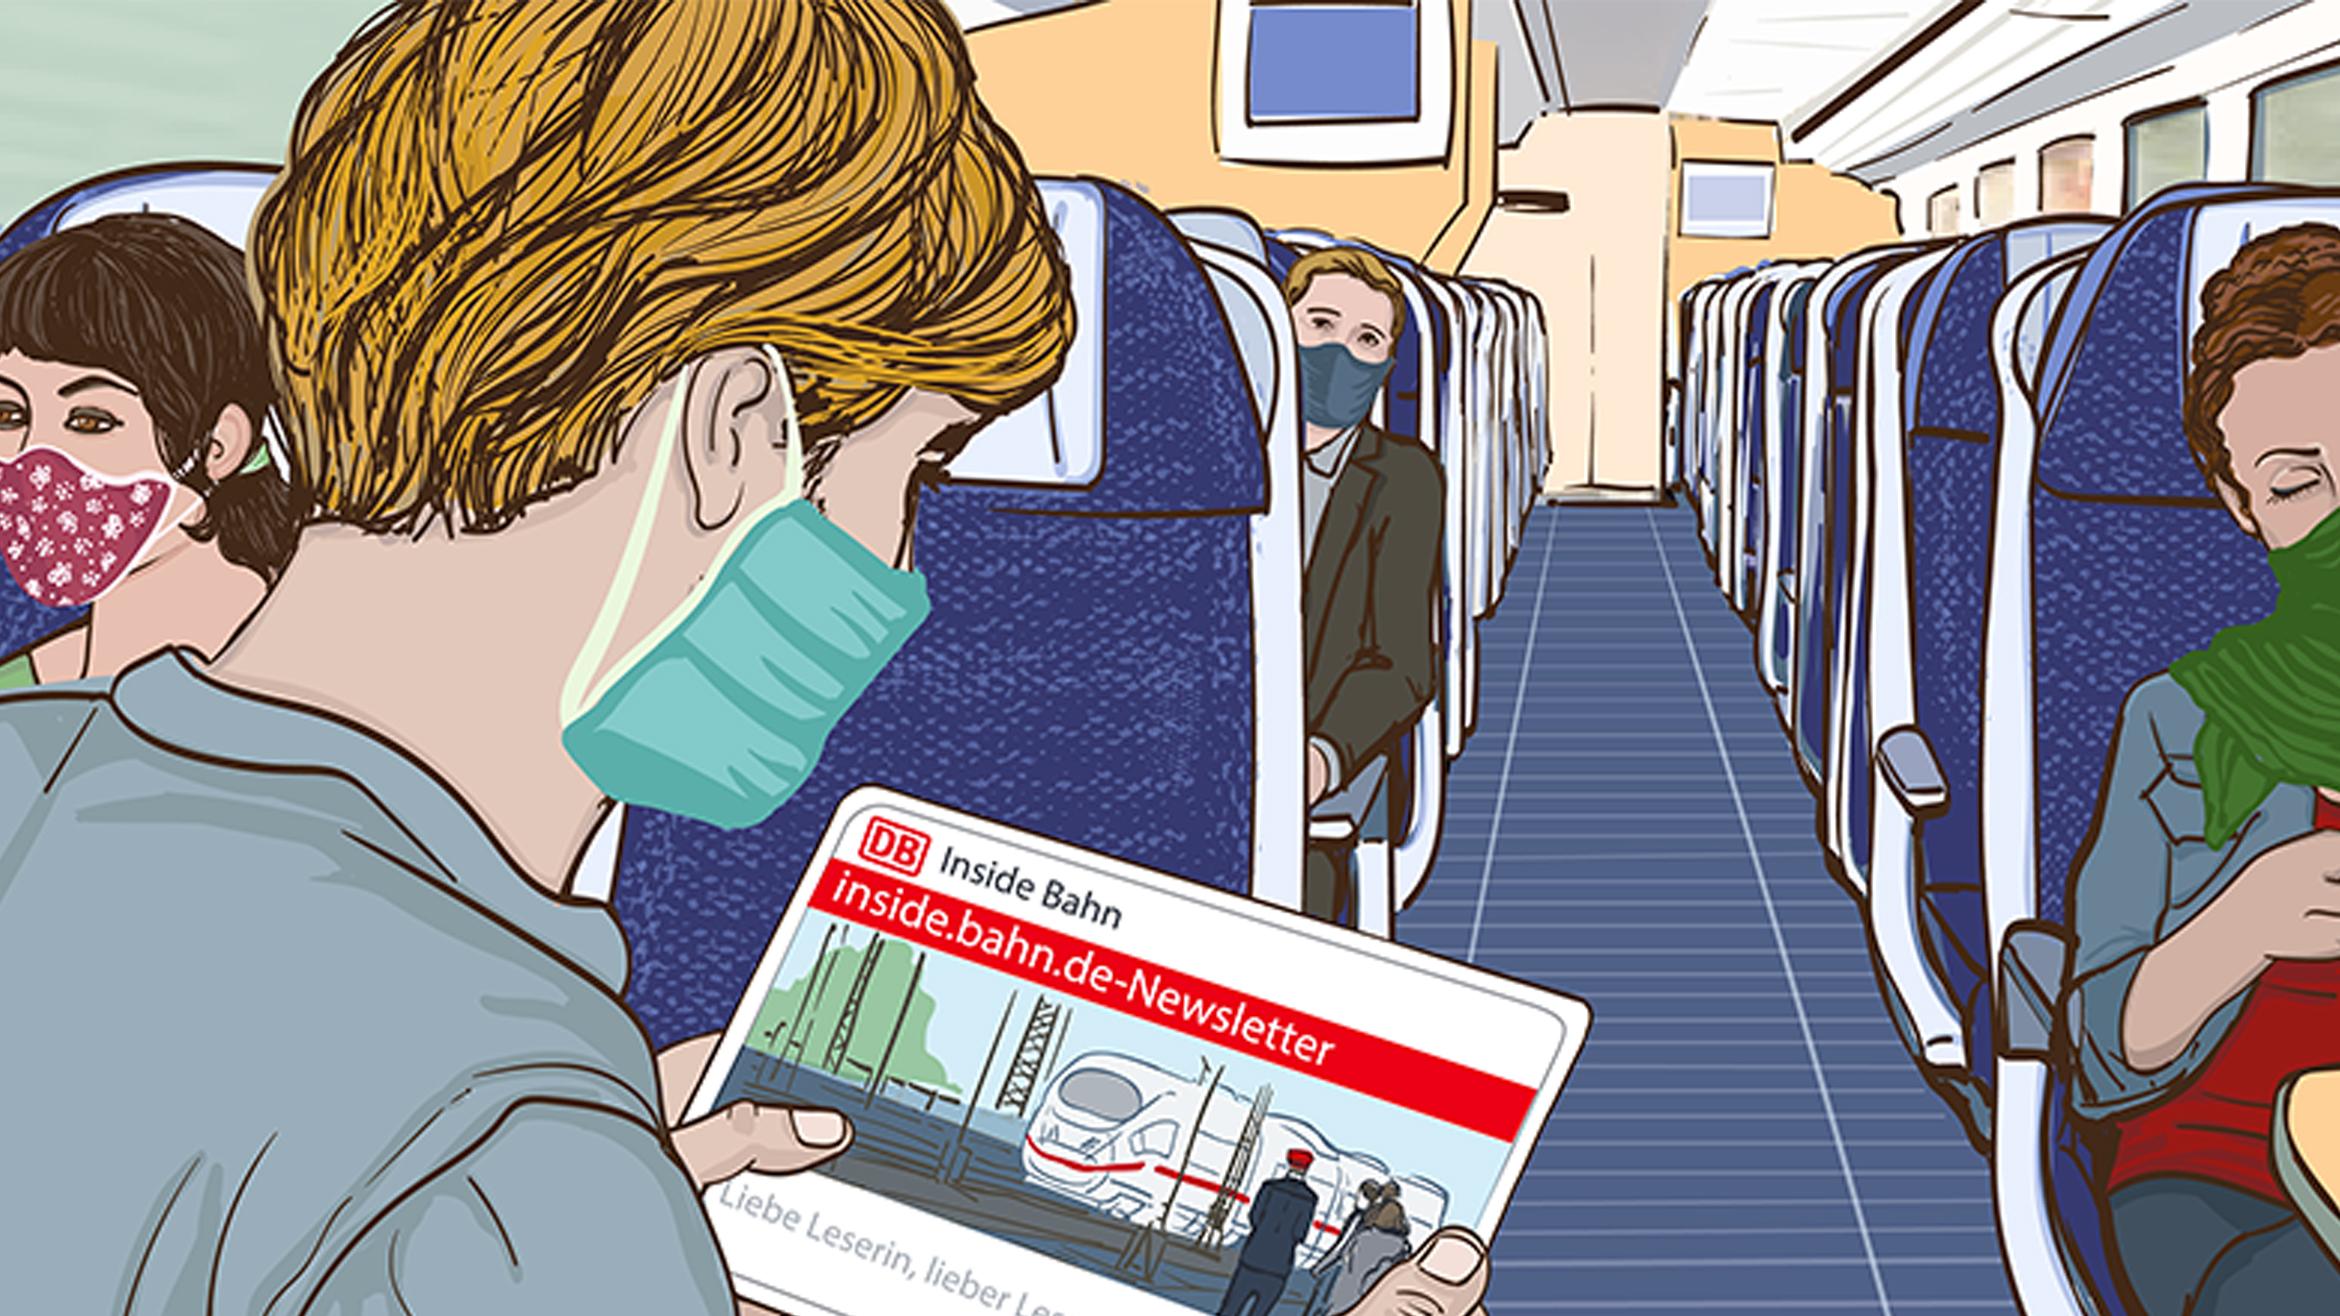 Die Deutsche Bahn betreibt vorbildliches E-Mail-Marketing und bietet unterschiedlichsteNewsletter. Hier beispielsweise Insight Bahn, mit dem die Kunden über den Konzern informiert werden –